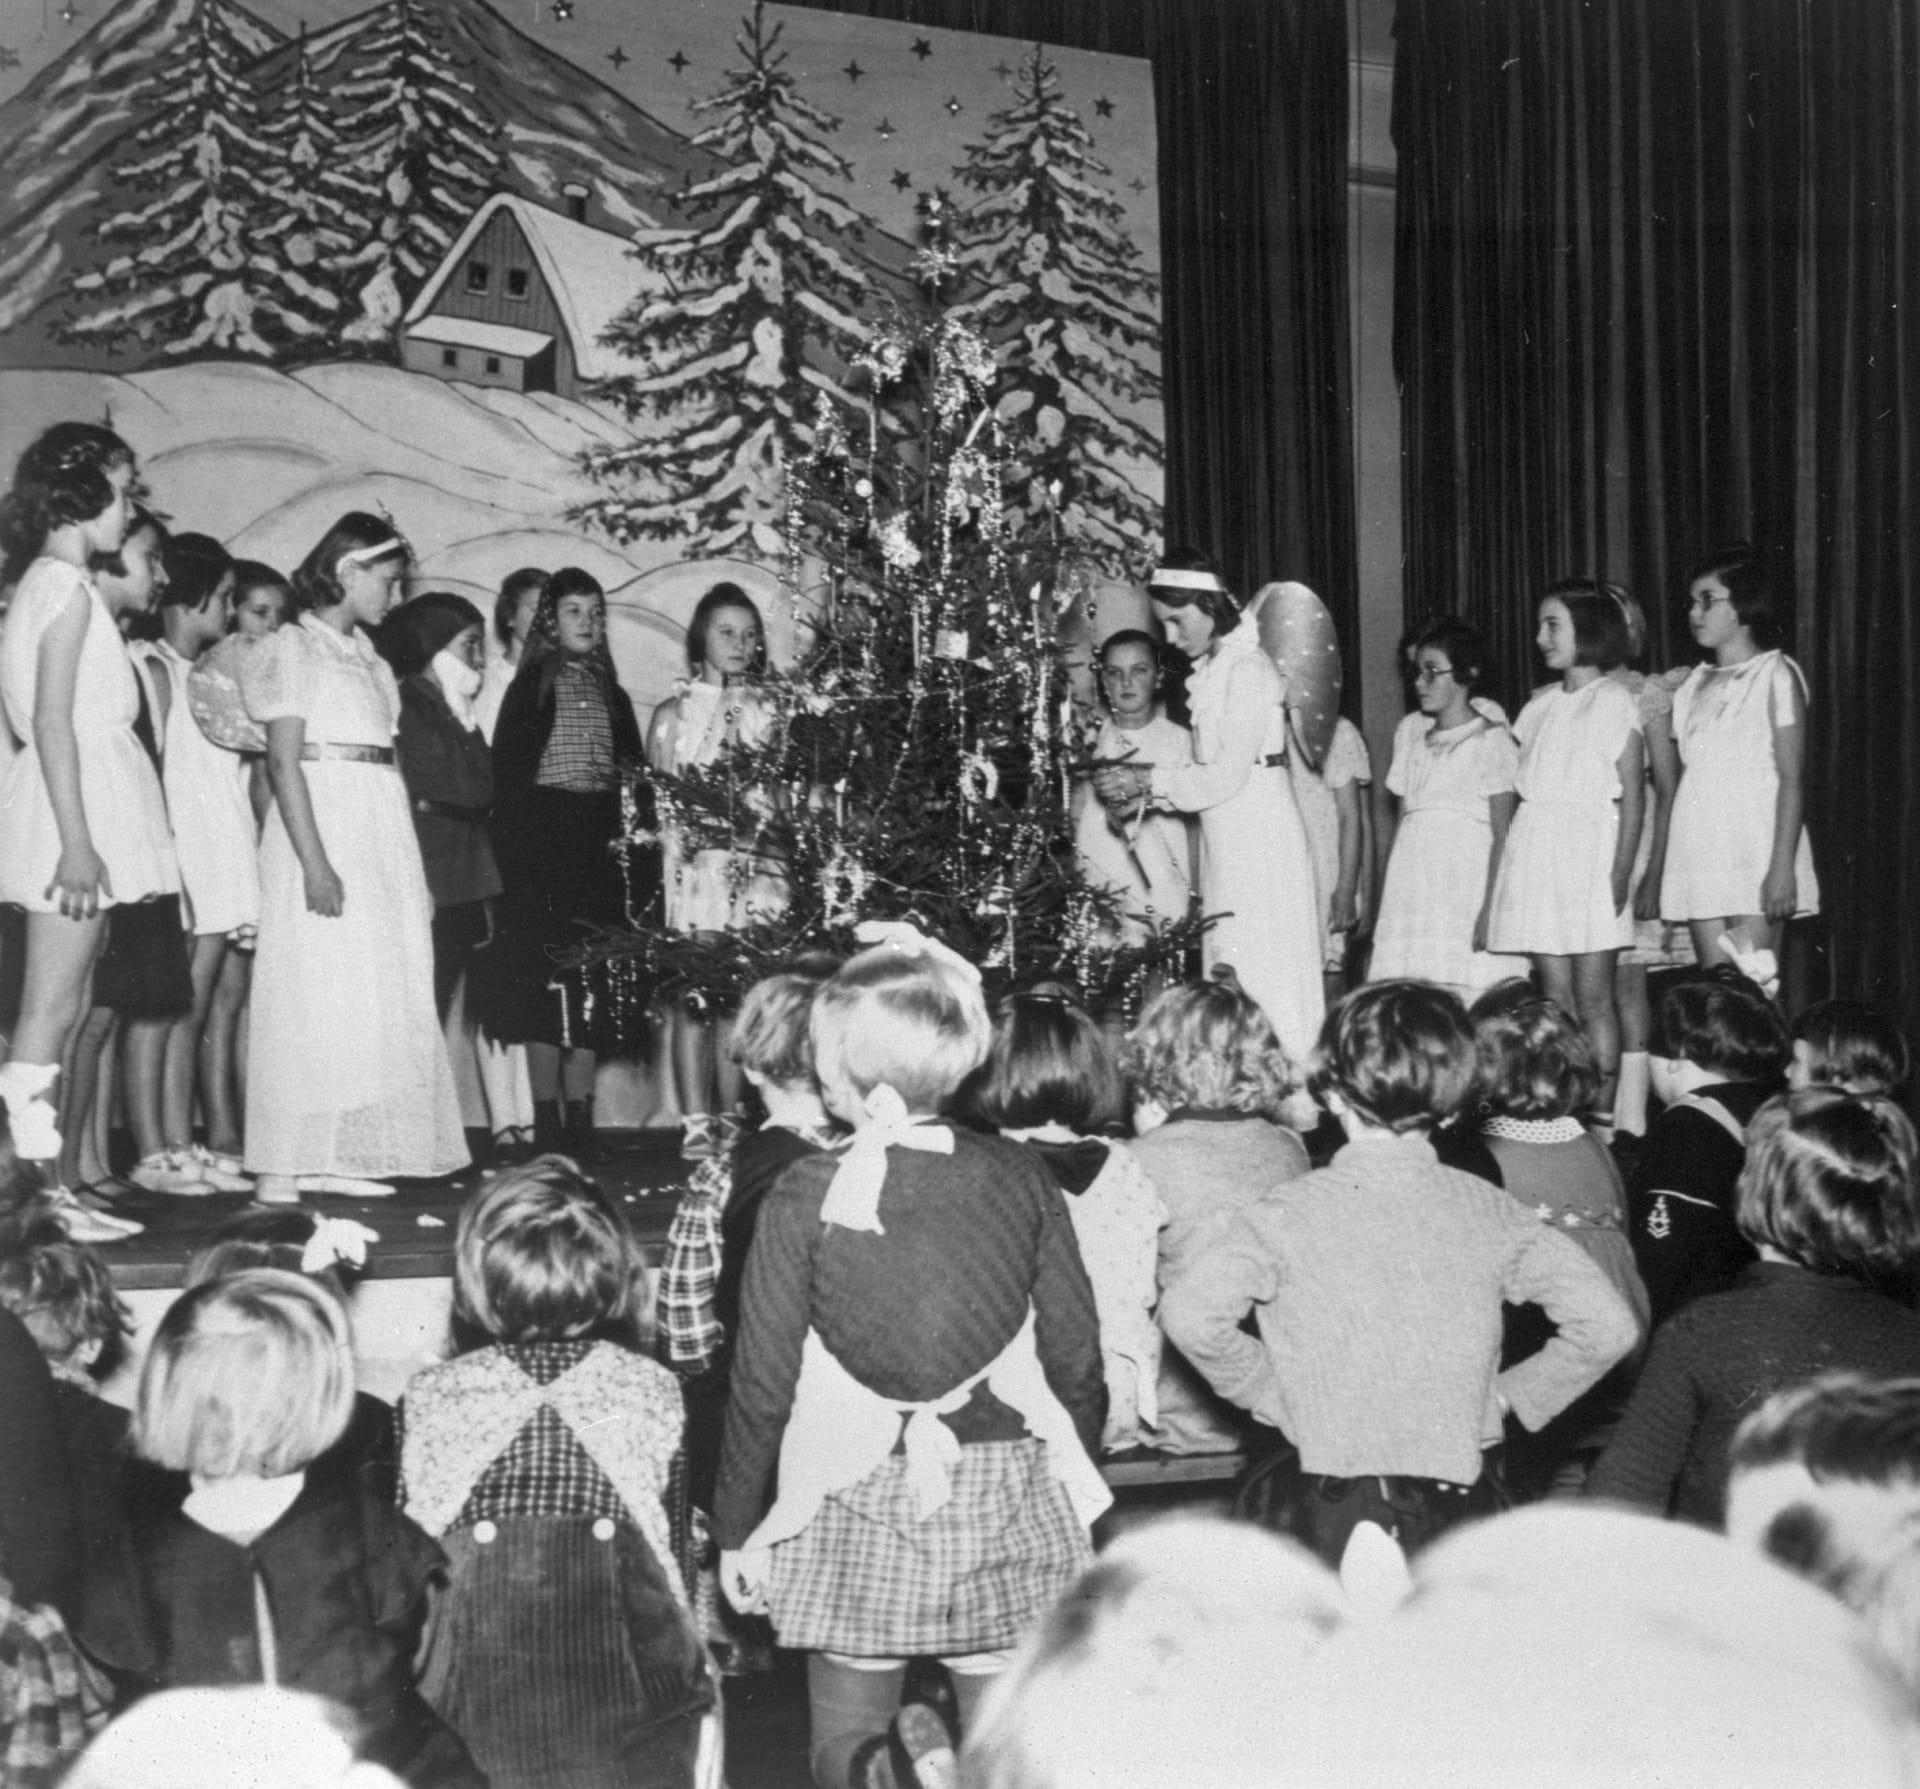 S Vánoci jsou také spojeny dětské besídky, na kterých se též rozdávají dárky. Takto se slavilo v roce 1938.